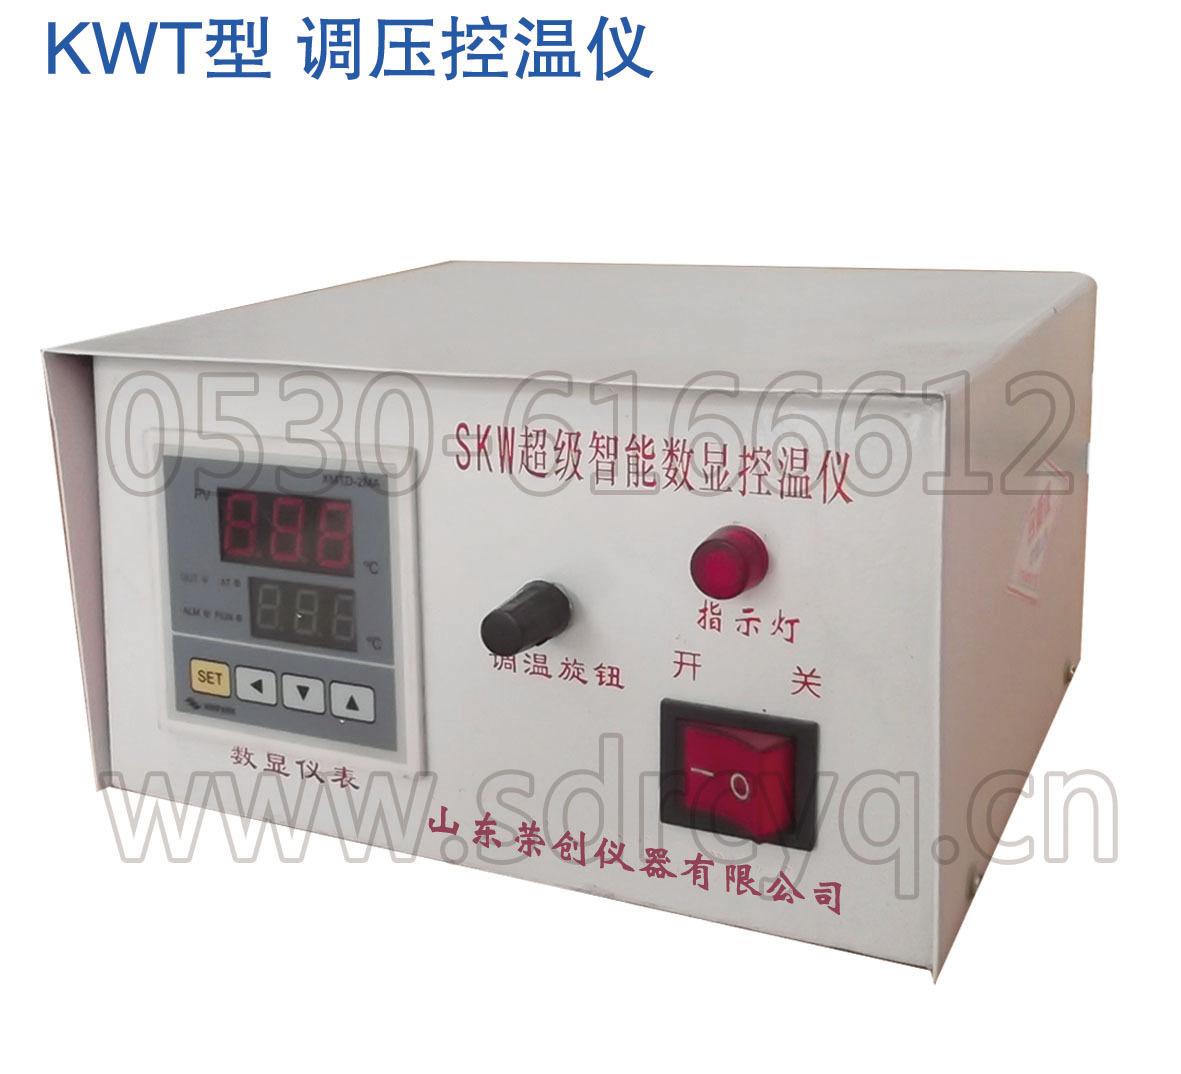 SKW型 超级智能数显控温仪-1